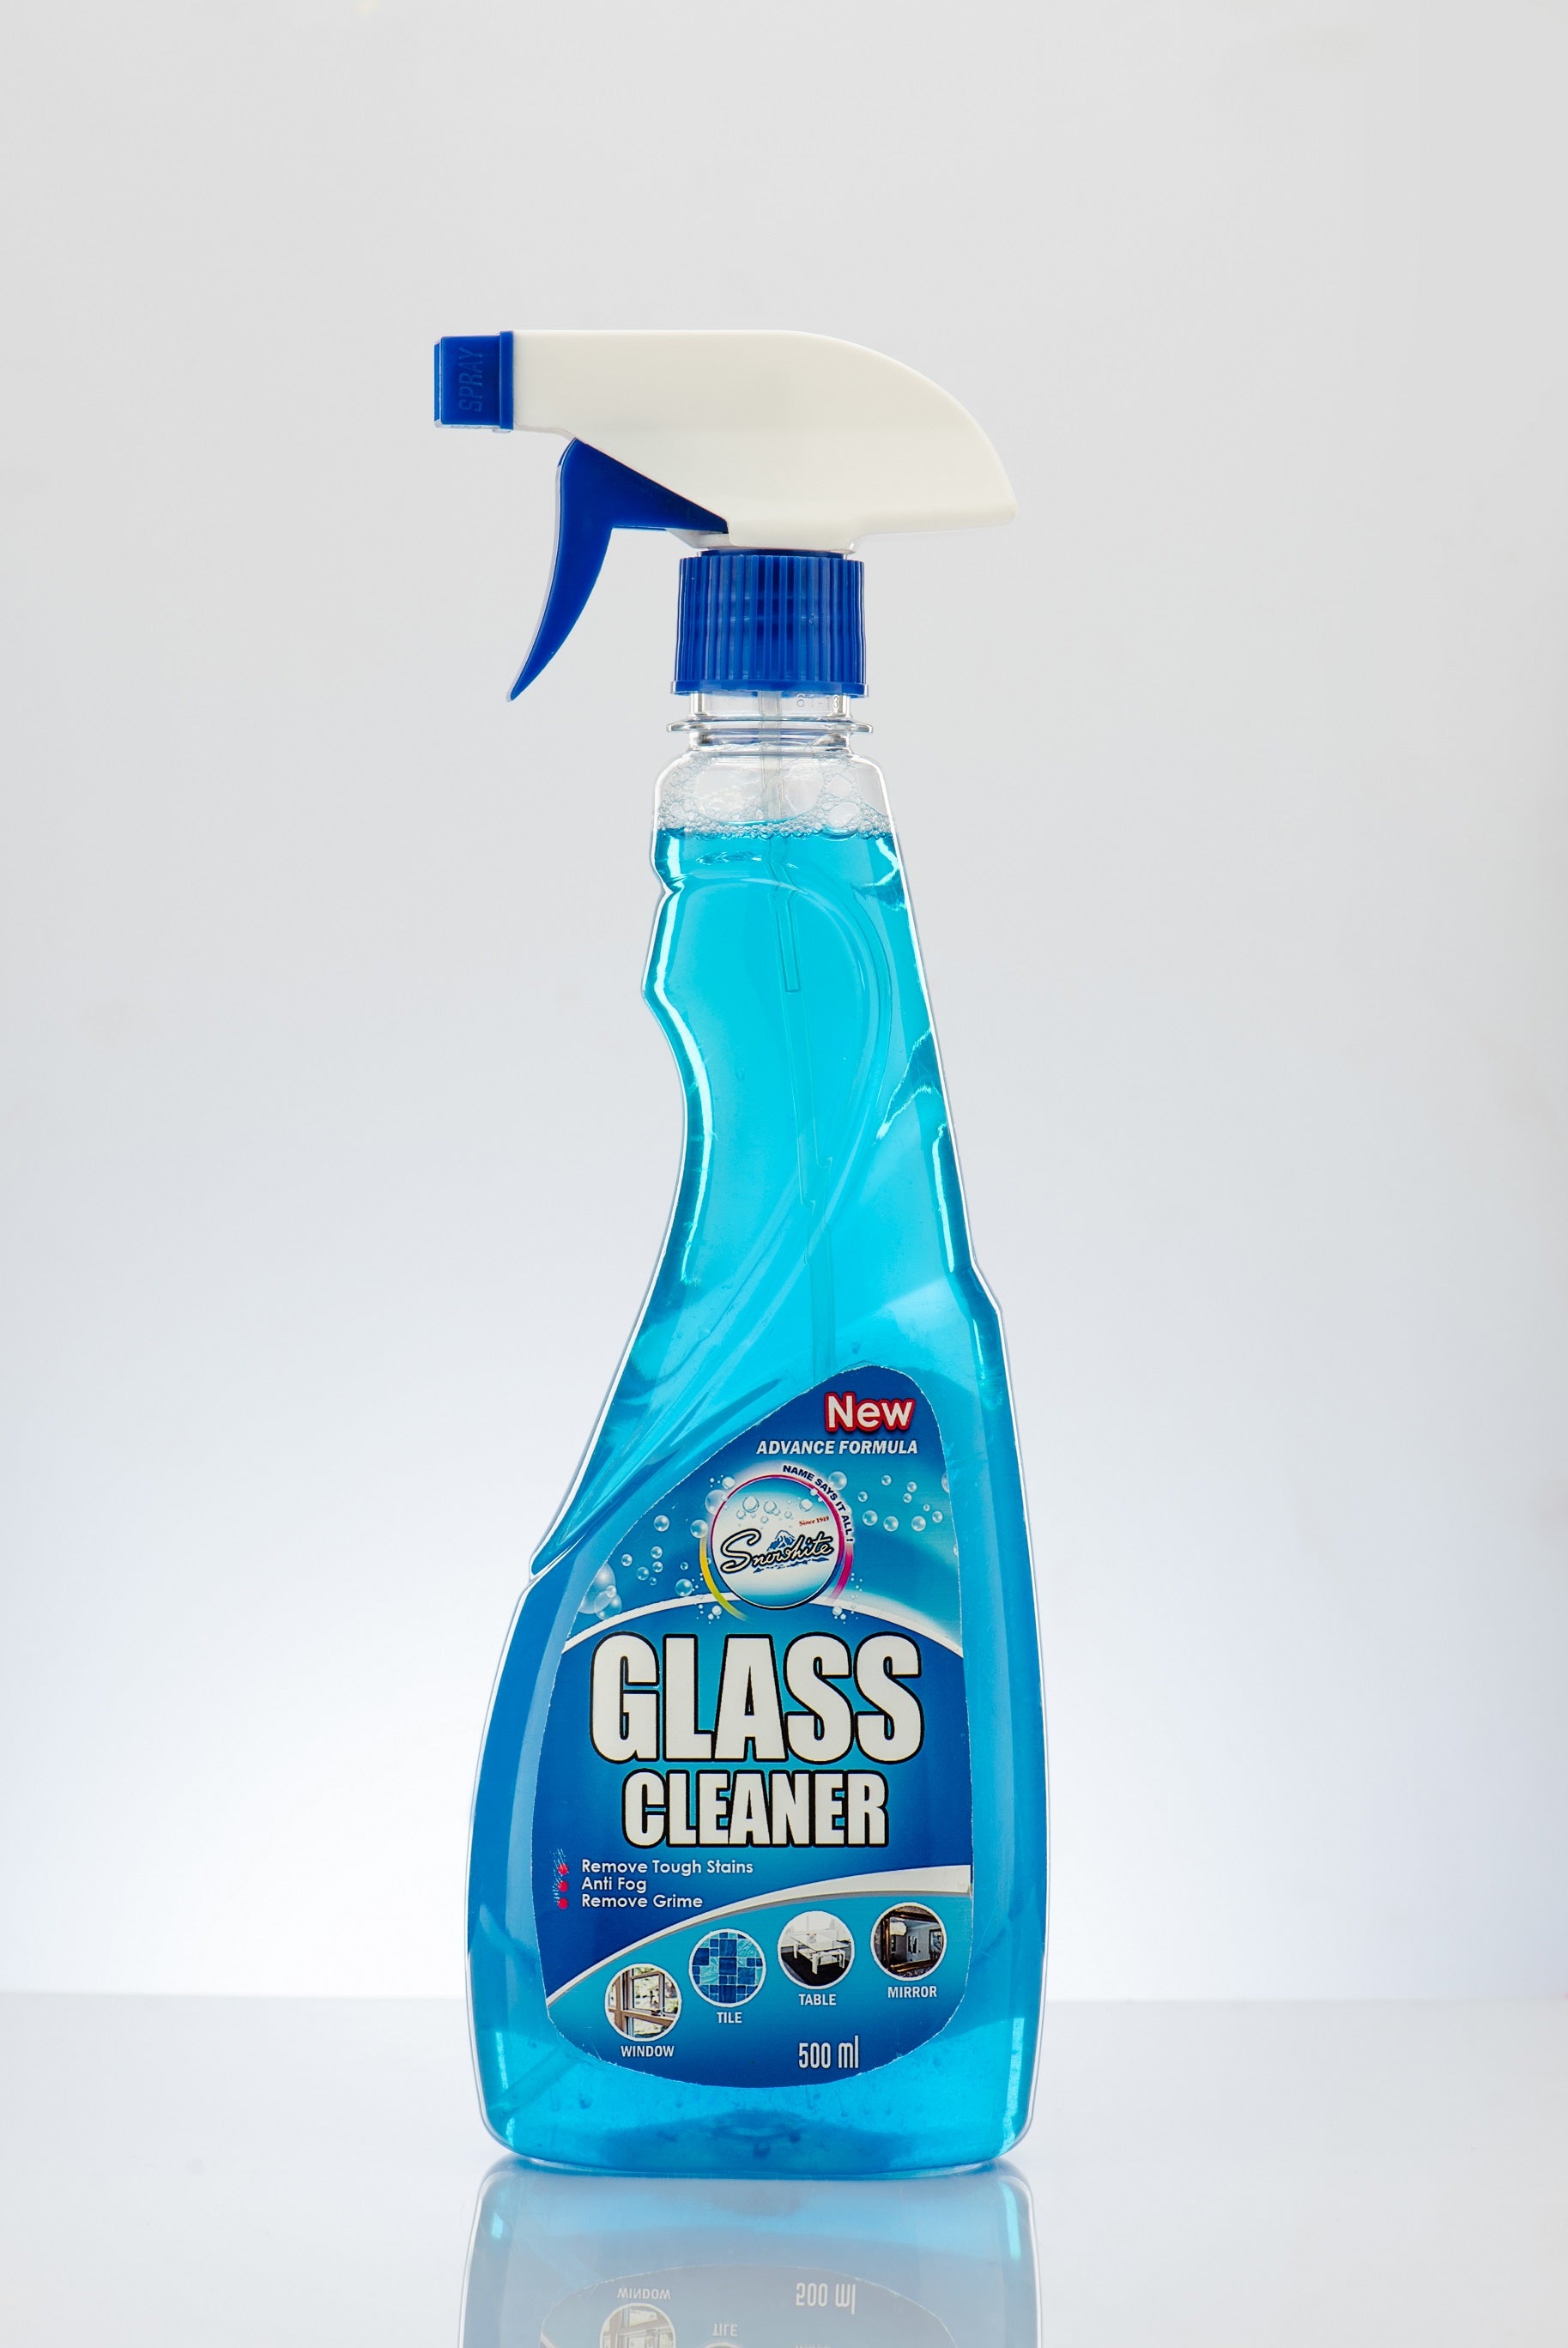 Glass Cleaner (New Advance Formula) Spray Bottle 500ml